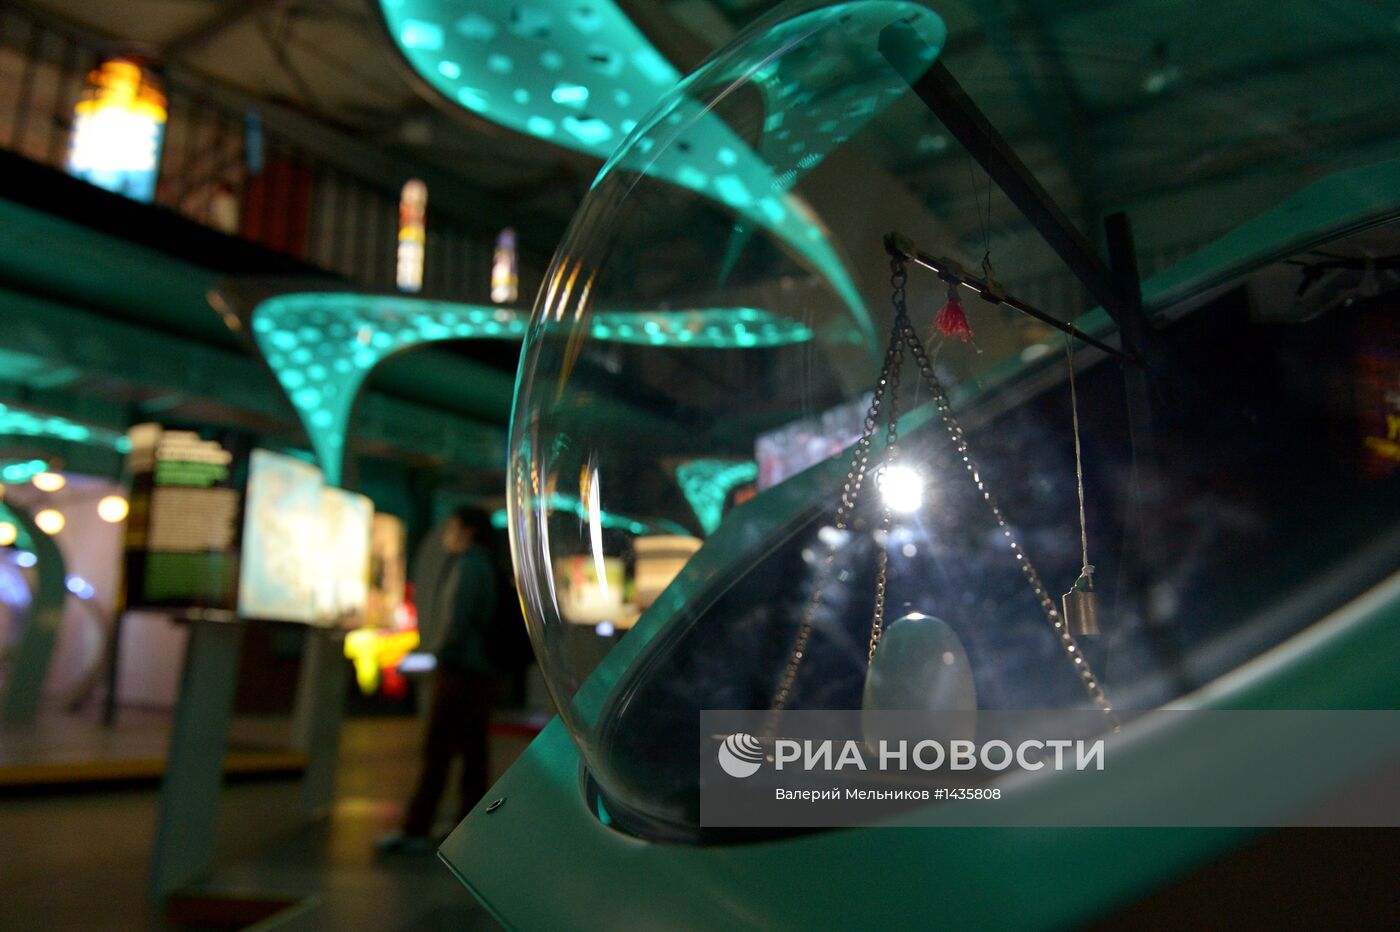 Мультимедийная выставка "Научный туннель Макса Планка"